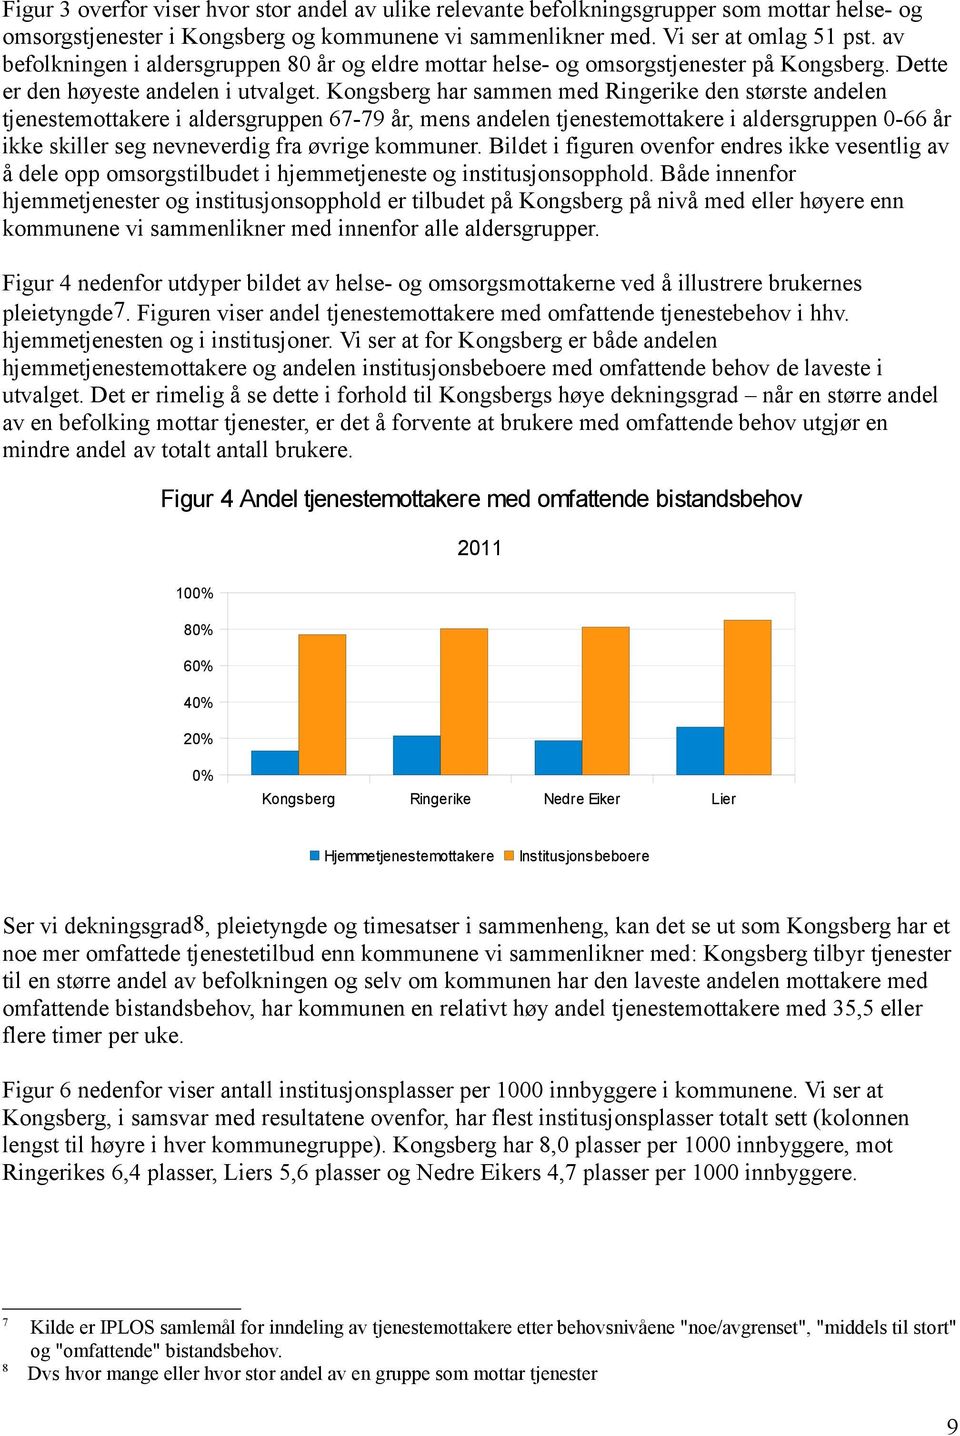 Kongsberg har sammen med Ringerike den største andelen tjenestemottakere i aldersgruppen 67-79 år, mens andelen tjenestemottakere i aldersgruppen 0-66 år ikke skiller seg nevneverdig fra øvrige